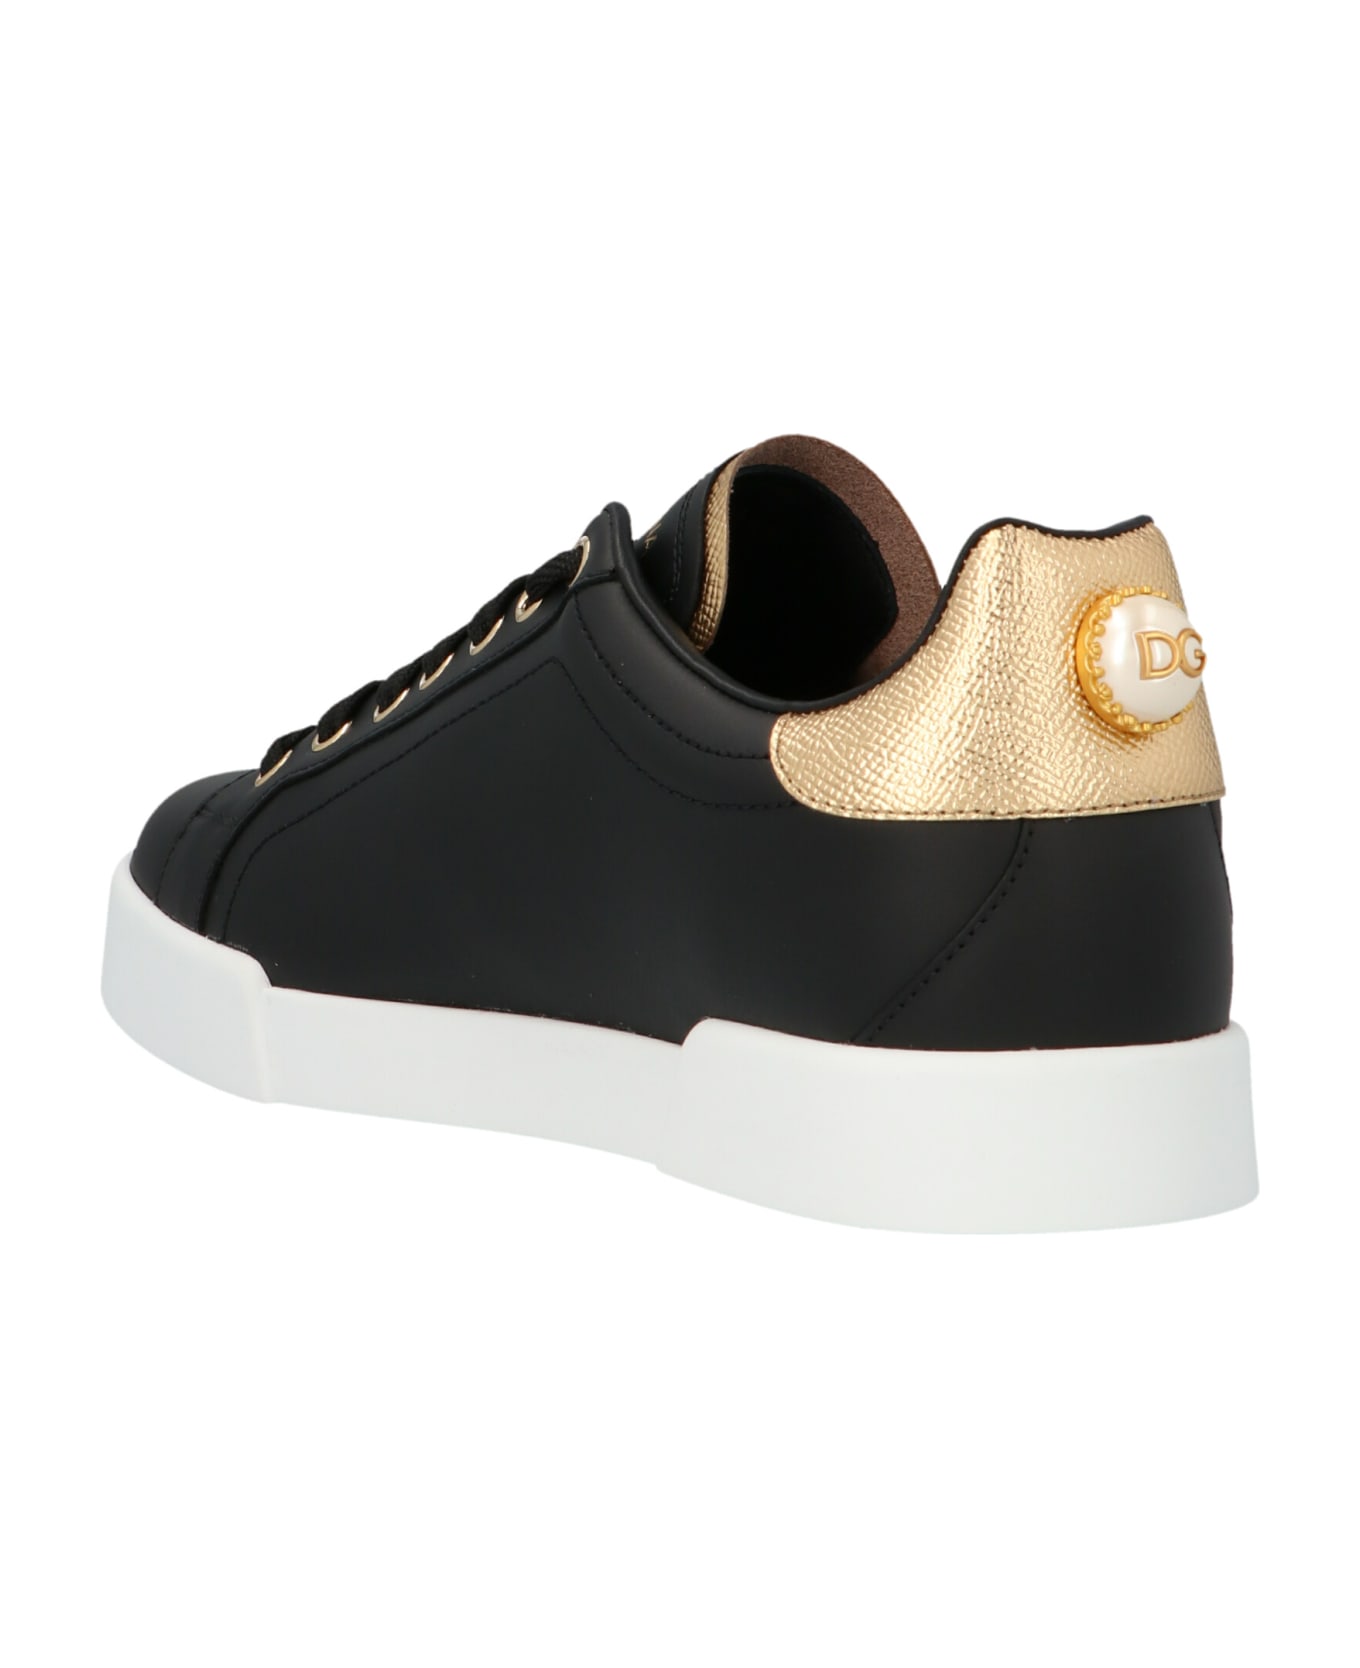 Dolce & Gabbana Portofino Sneakers - BLACK/GOLD